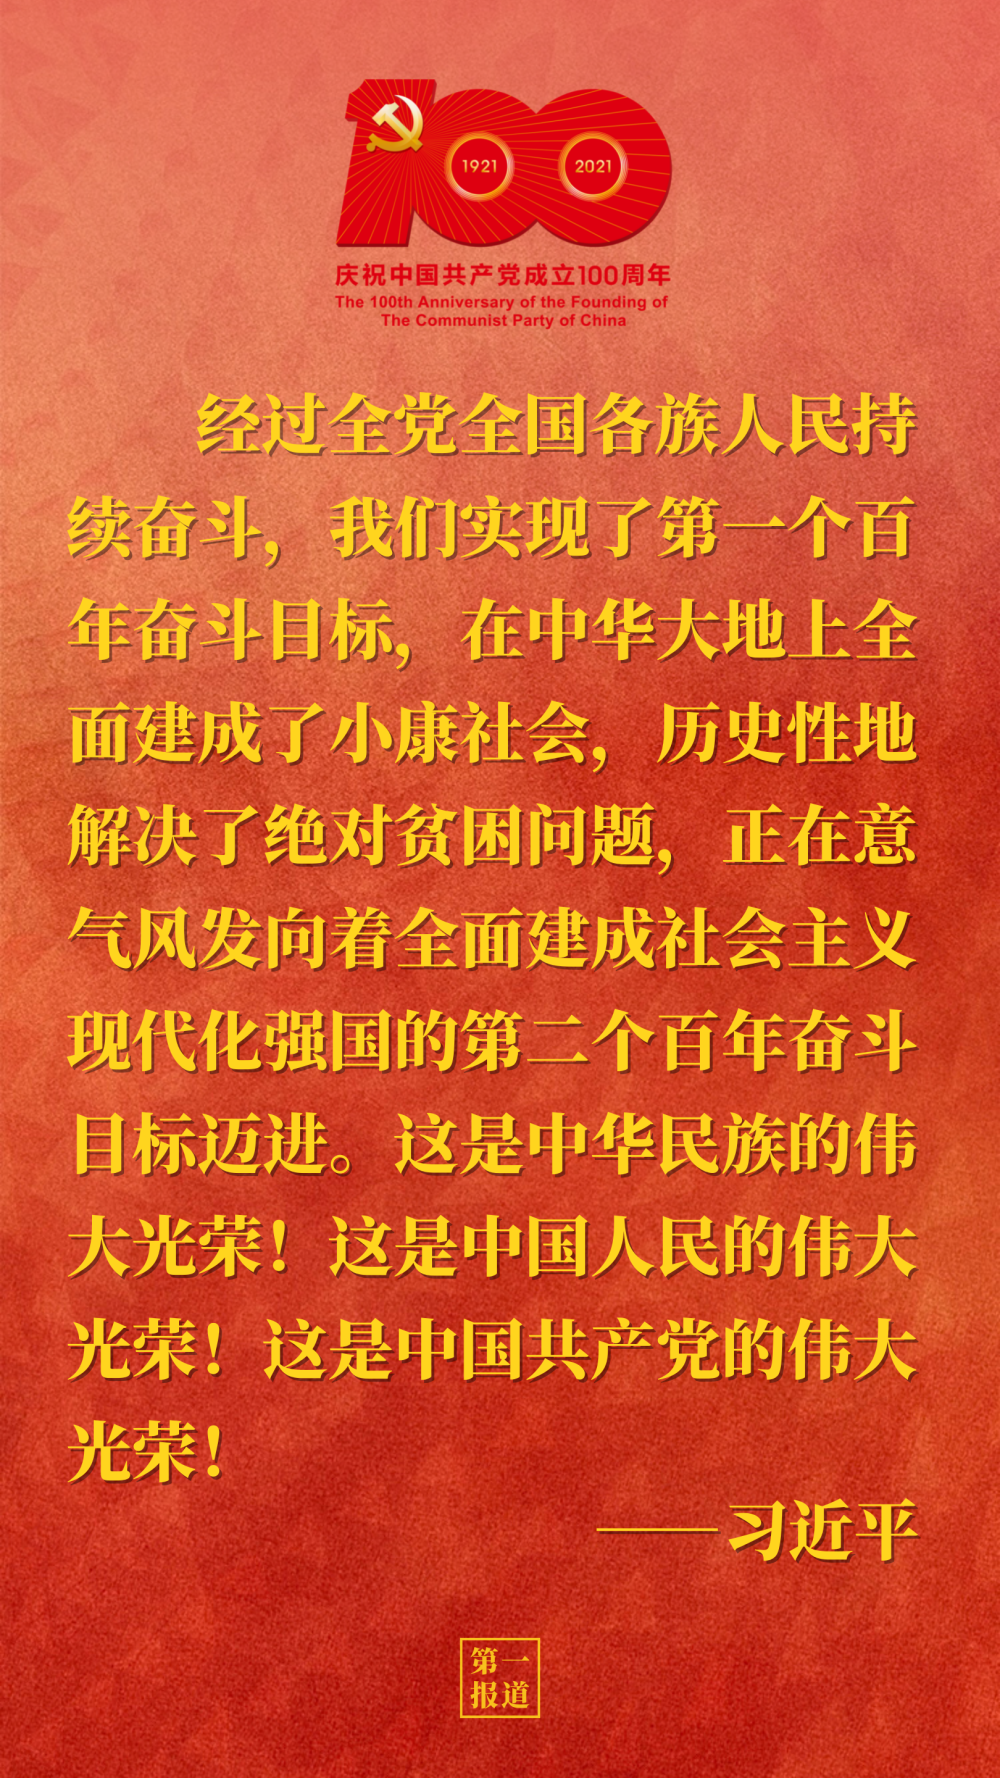 从习近平的庄严宣告里，世界读懂中国全面小康的伟大光荣